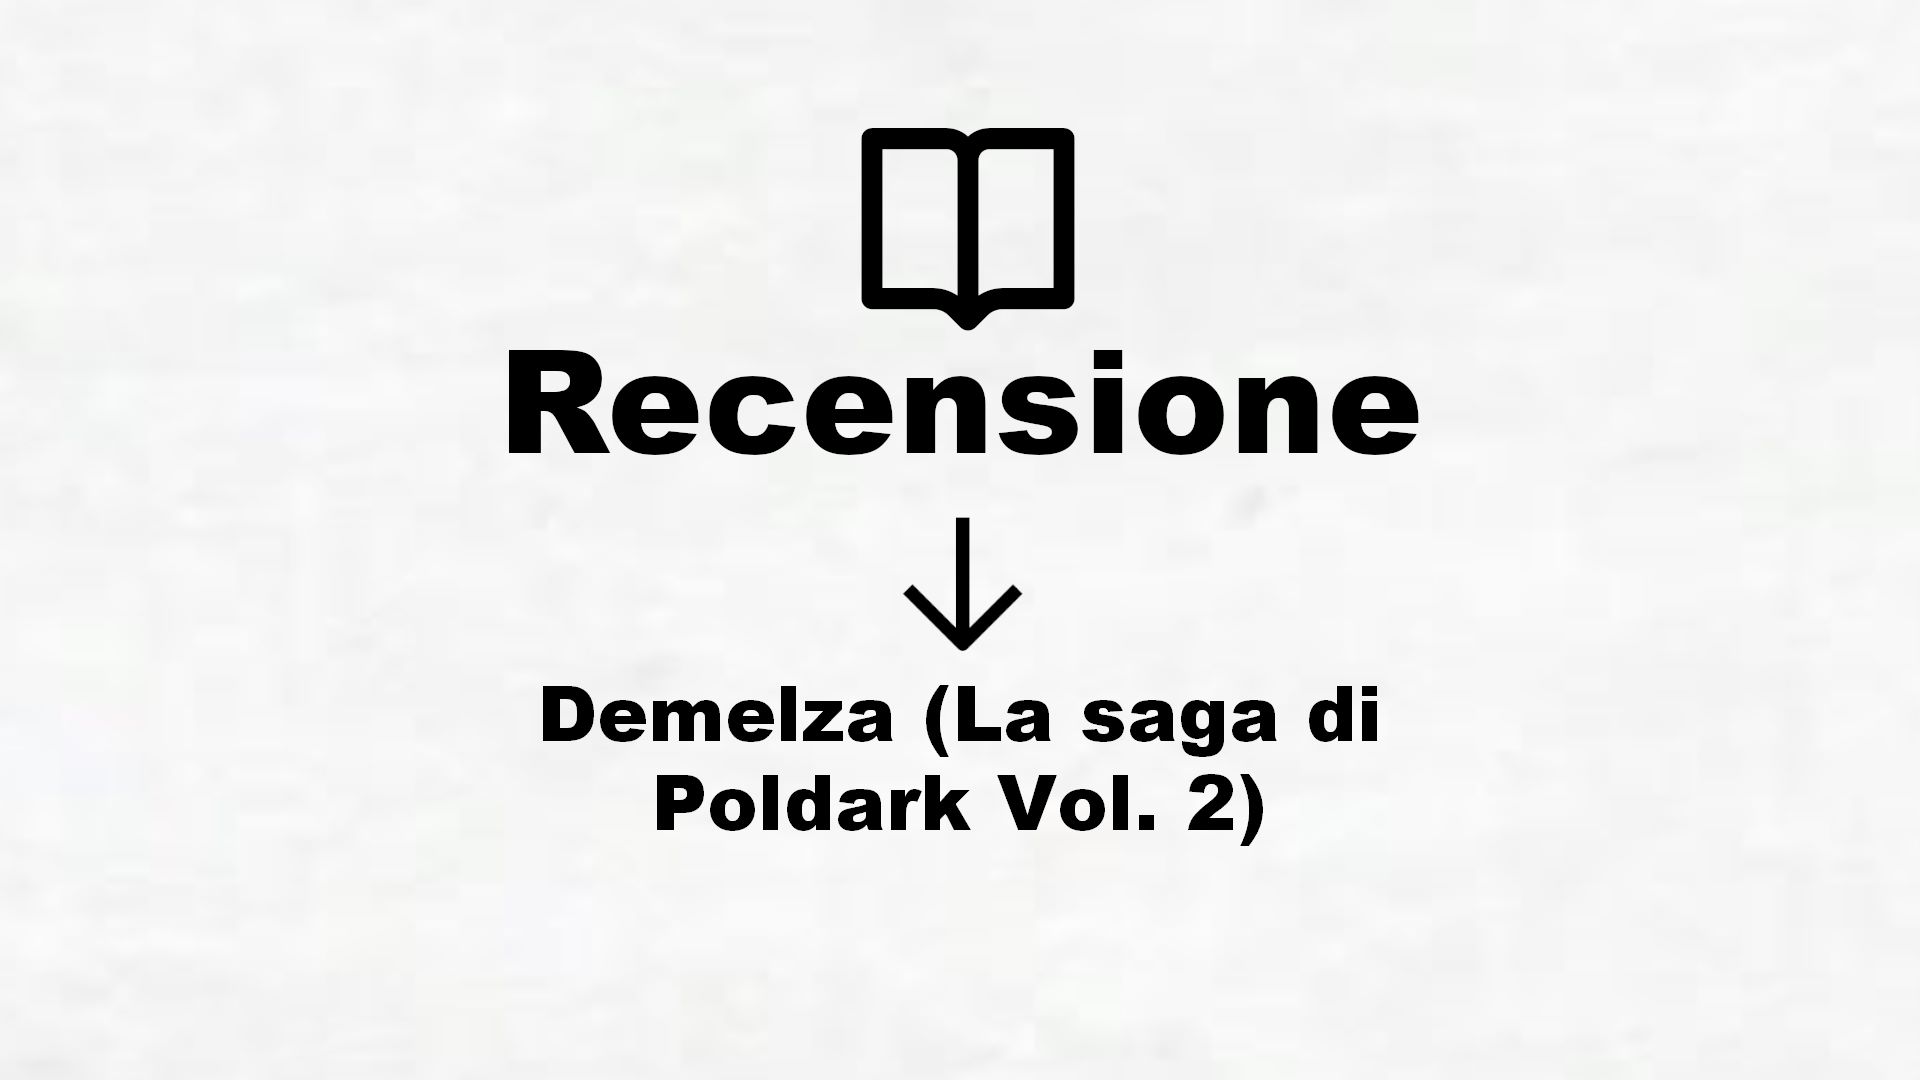 Demelza (La saga di Poldark Vol. 2) – Recensione Libro